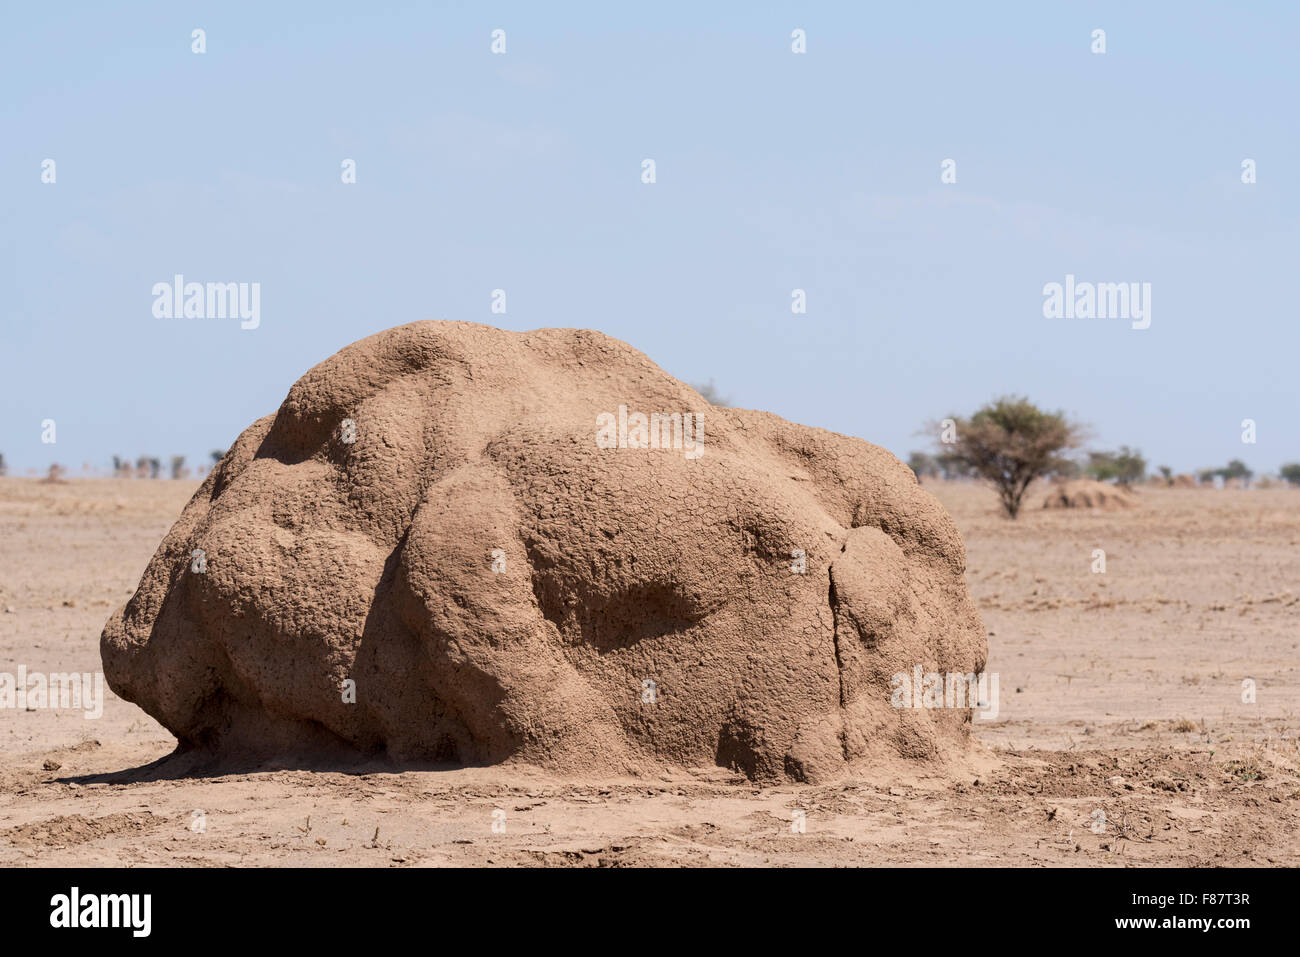 A large termite mound on the Alledeghe Plain (near Awash), Ethiopia Stock Photo